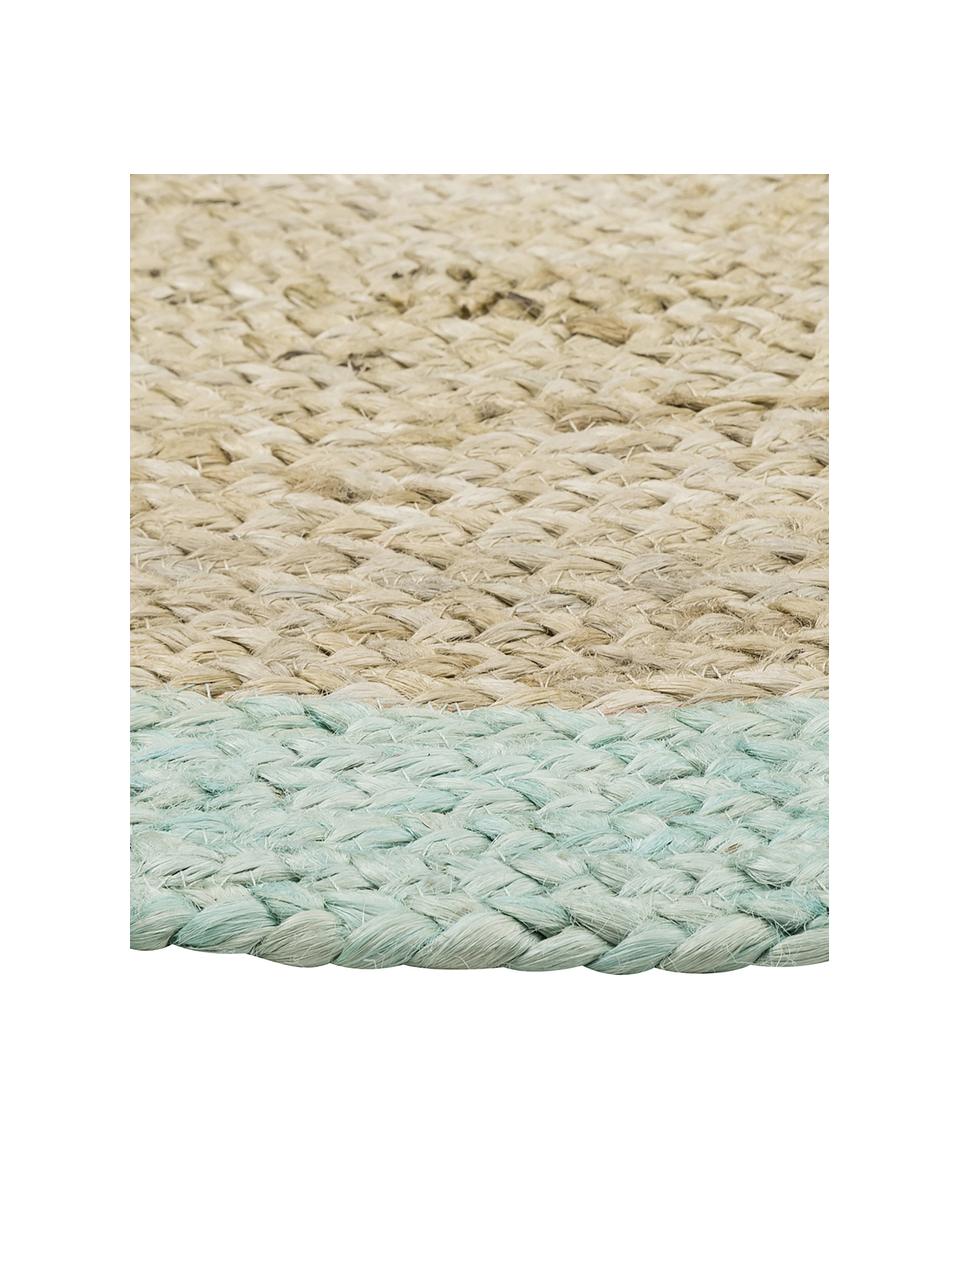 Okrúhly ručne vyrobený jutový koberec Shanta, 100 % juta

Pretože jutové koberce sú drsné, sú menej vhodné na priamy kontakt s pokožkou, Béžová, mätovozelená, Ø 200 cm (veľkosť L)